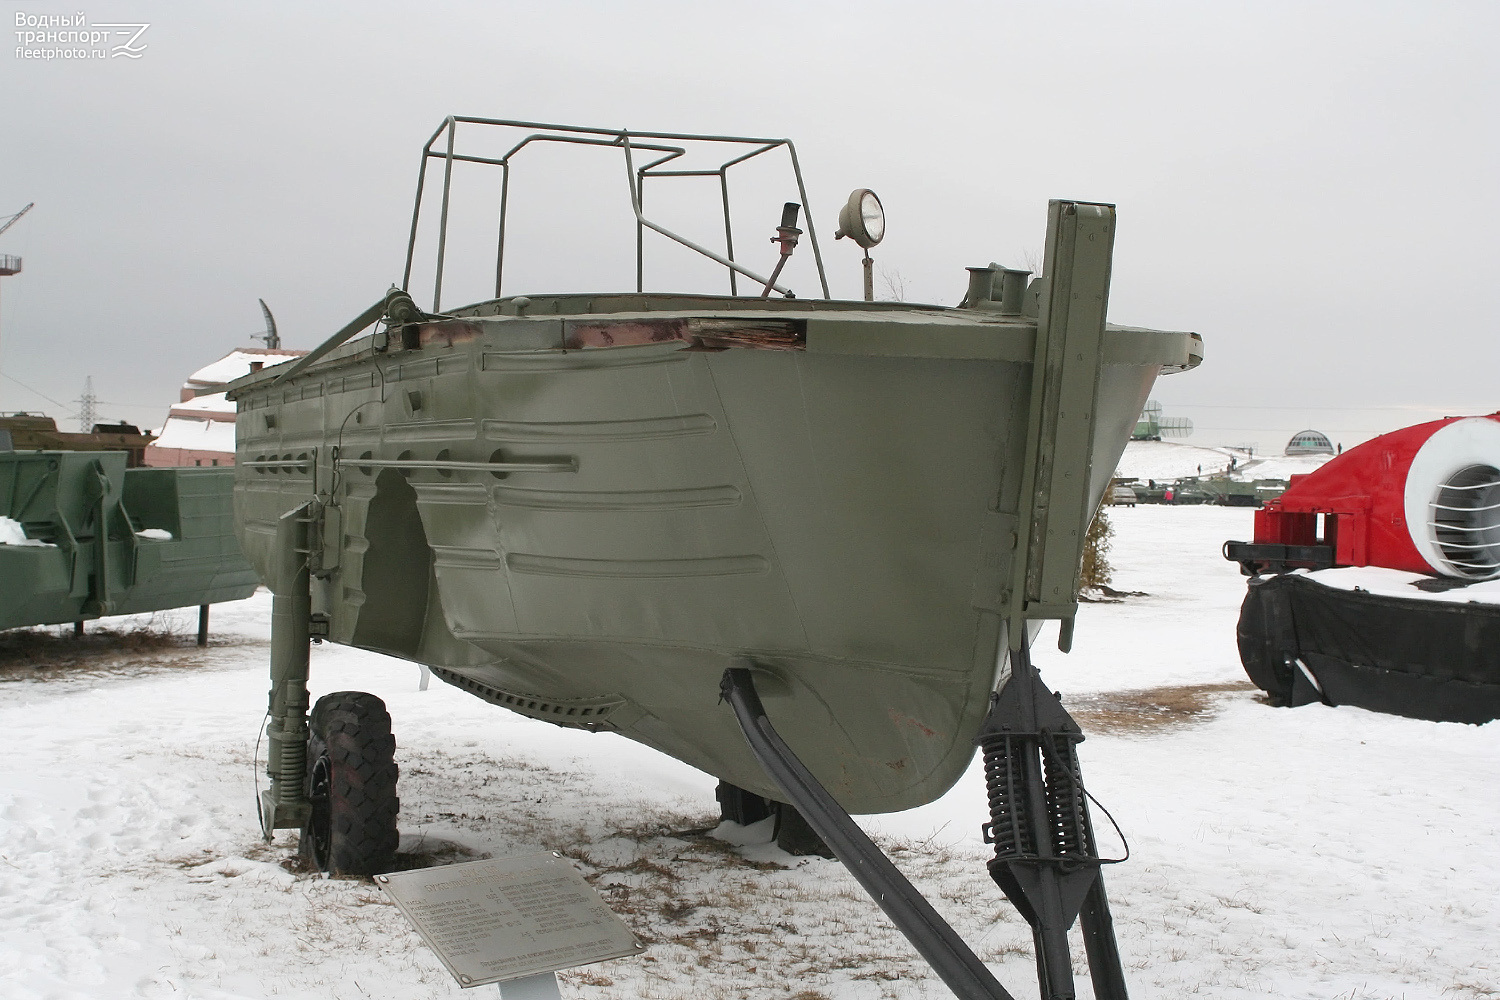 Неопознанное судно - тип БМК-130, БМК-130М, БМК-130МЛ. Волжский бассейн